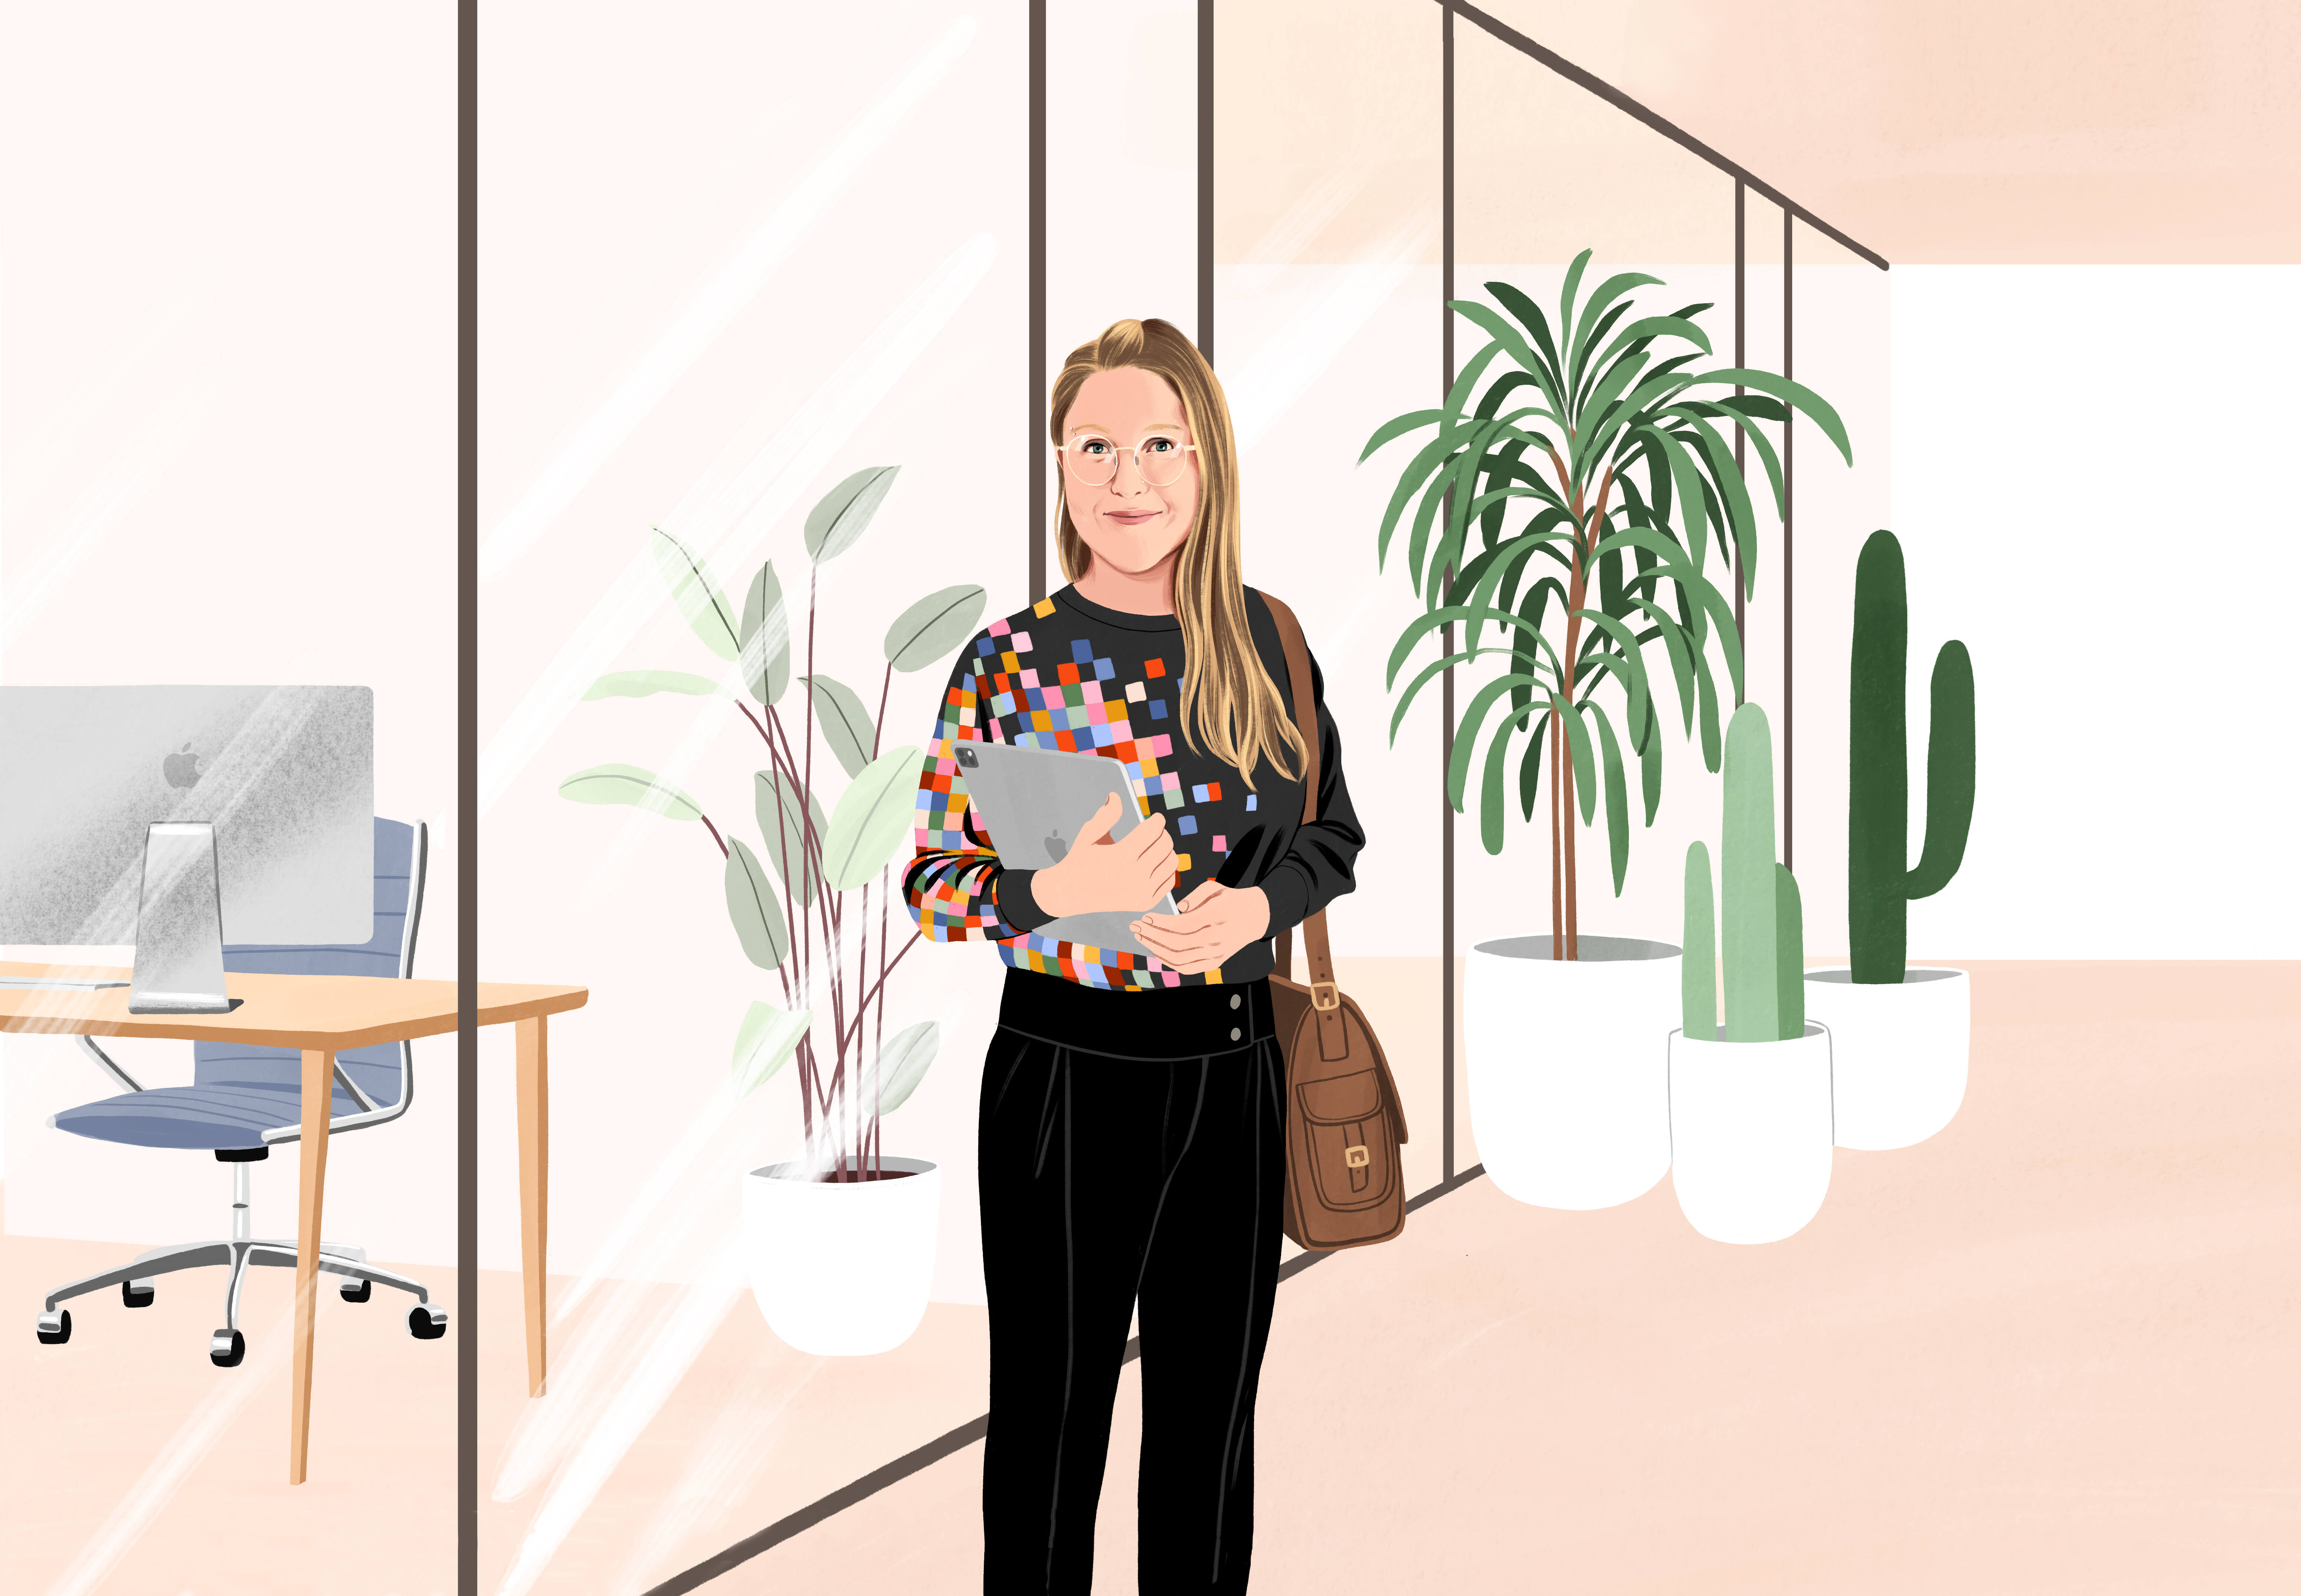 Manuela in piedi sorridente in una sala dell’ufficio, con un iPad in mano e una borsa a spalla. Indossa pantaloni neri e una maglia nera con un motivo con pixel colorati.